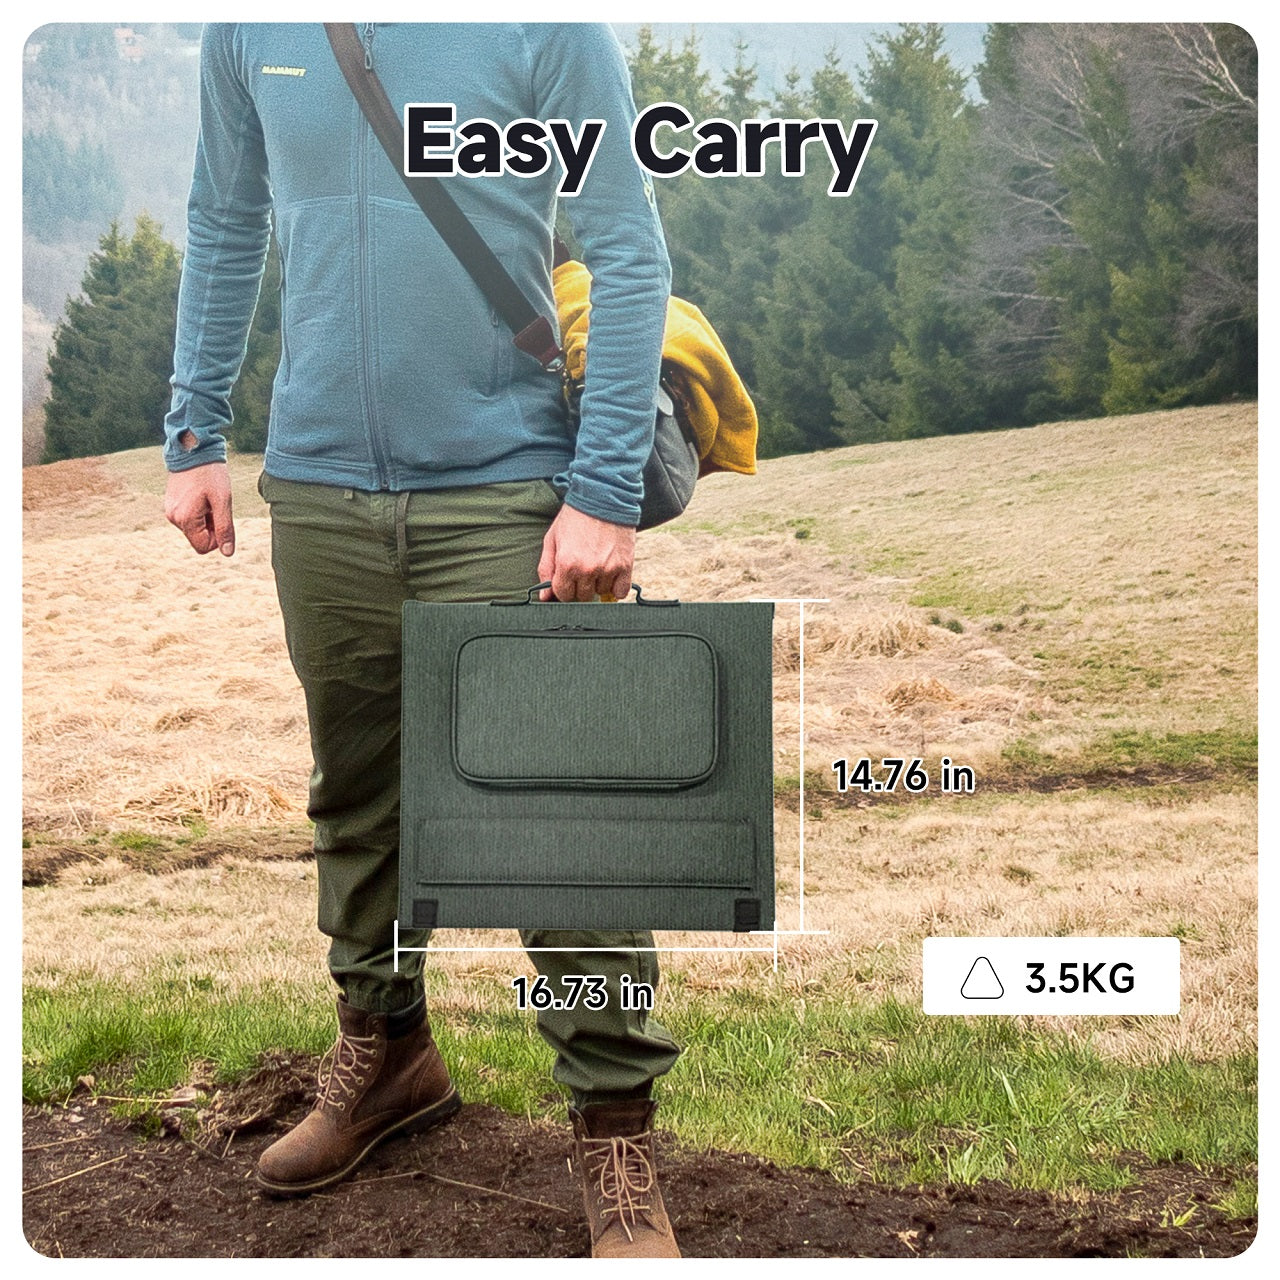 Easy Carry Solar